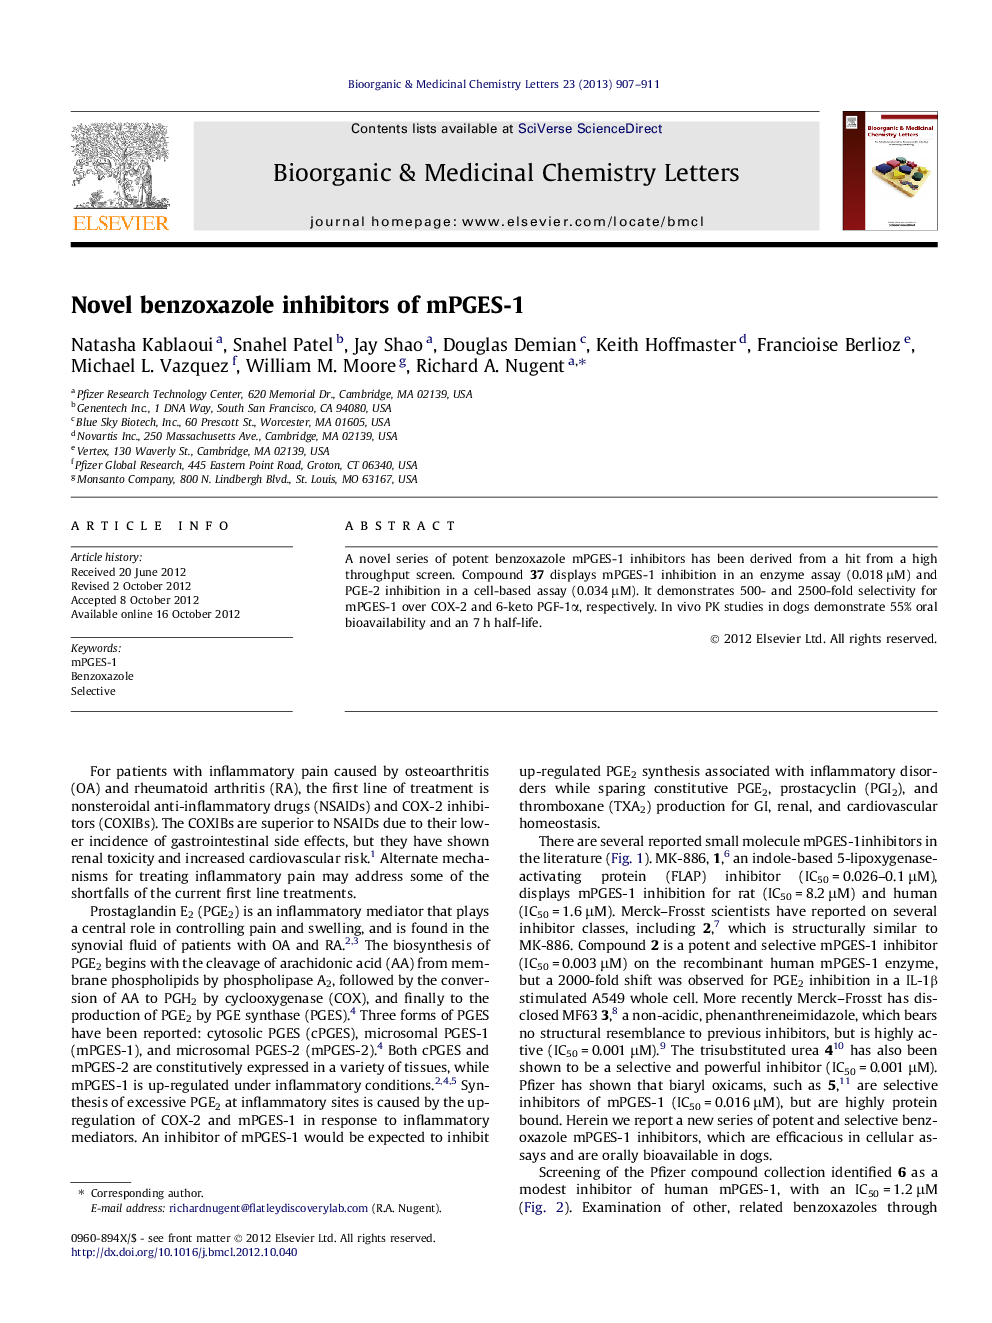 Novel benzoxazole inhibitors of mPGES-1